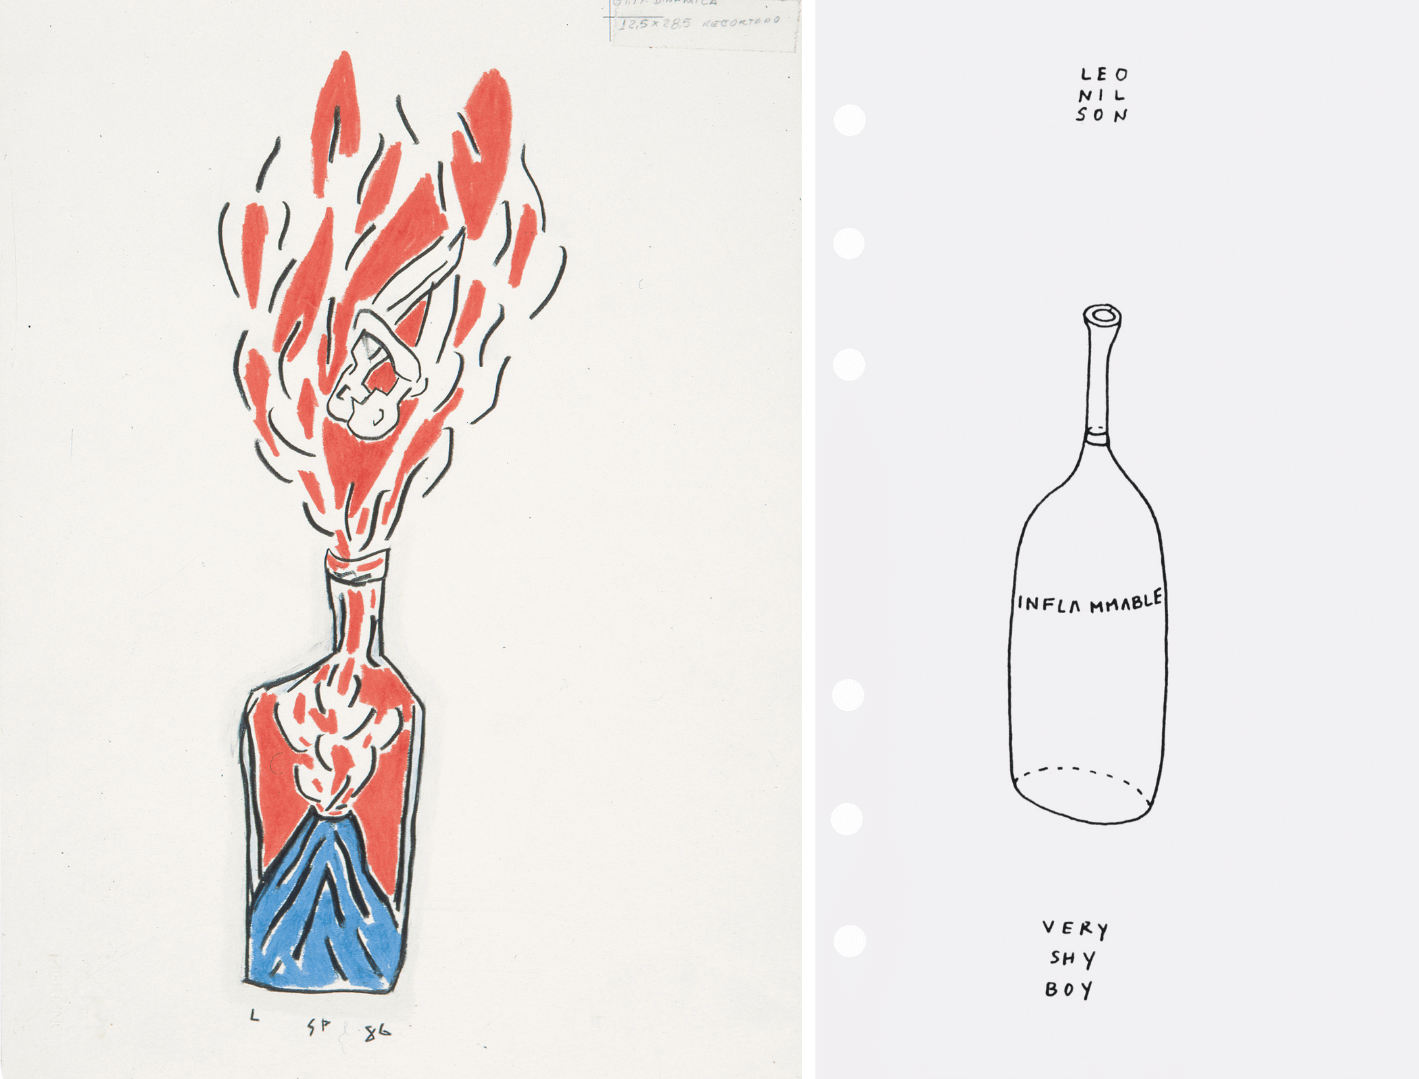 Links: Filzstift-Zeichnung von Leonilson, zu sehen ist eine Flasche, in der gerade ein Vulkan ausbricht, aus der Flasche tritt eine große Flamme heraus, in der Flamme sieht man ein eng umschlungenes Paar, die sich kopfüber in Richtung Flaschenhals bewegen, rechts: Filzstift-Zeichnung von Leonilson, zu sehen ist eine leere Flasche, aus der Inflammable steht, darüber steht Leonilson, darunter die Worte very shy boy